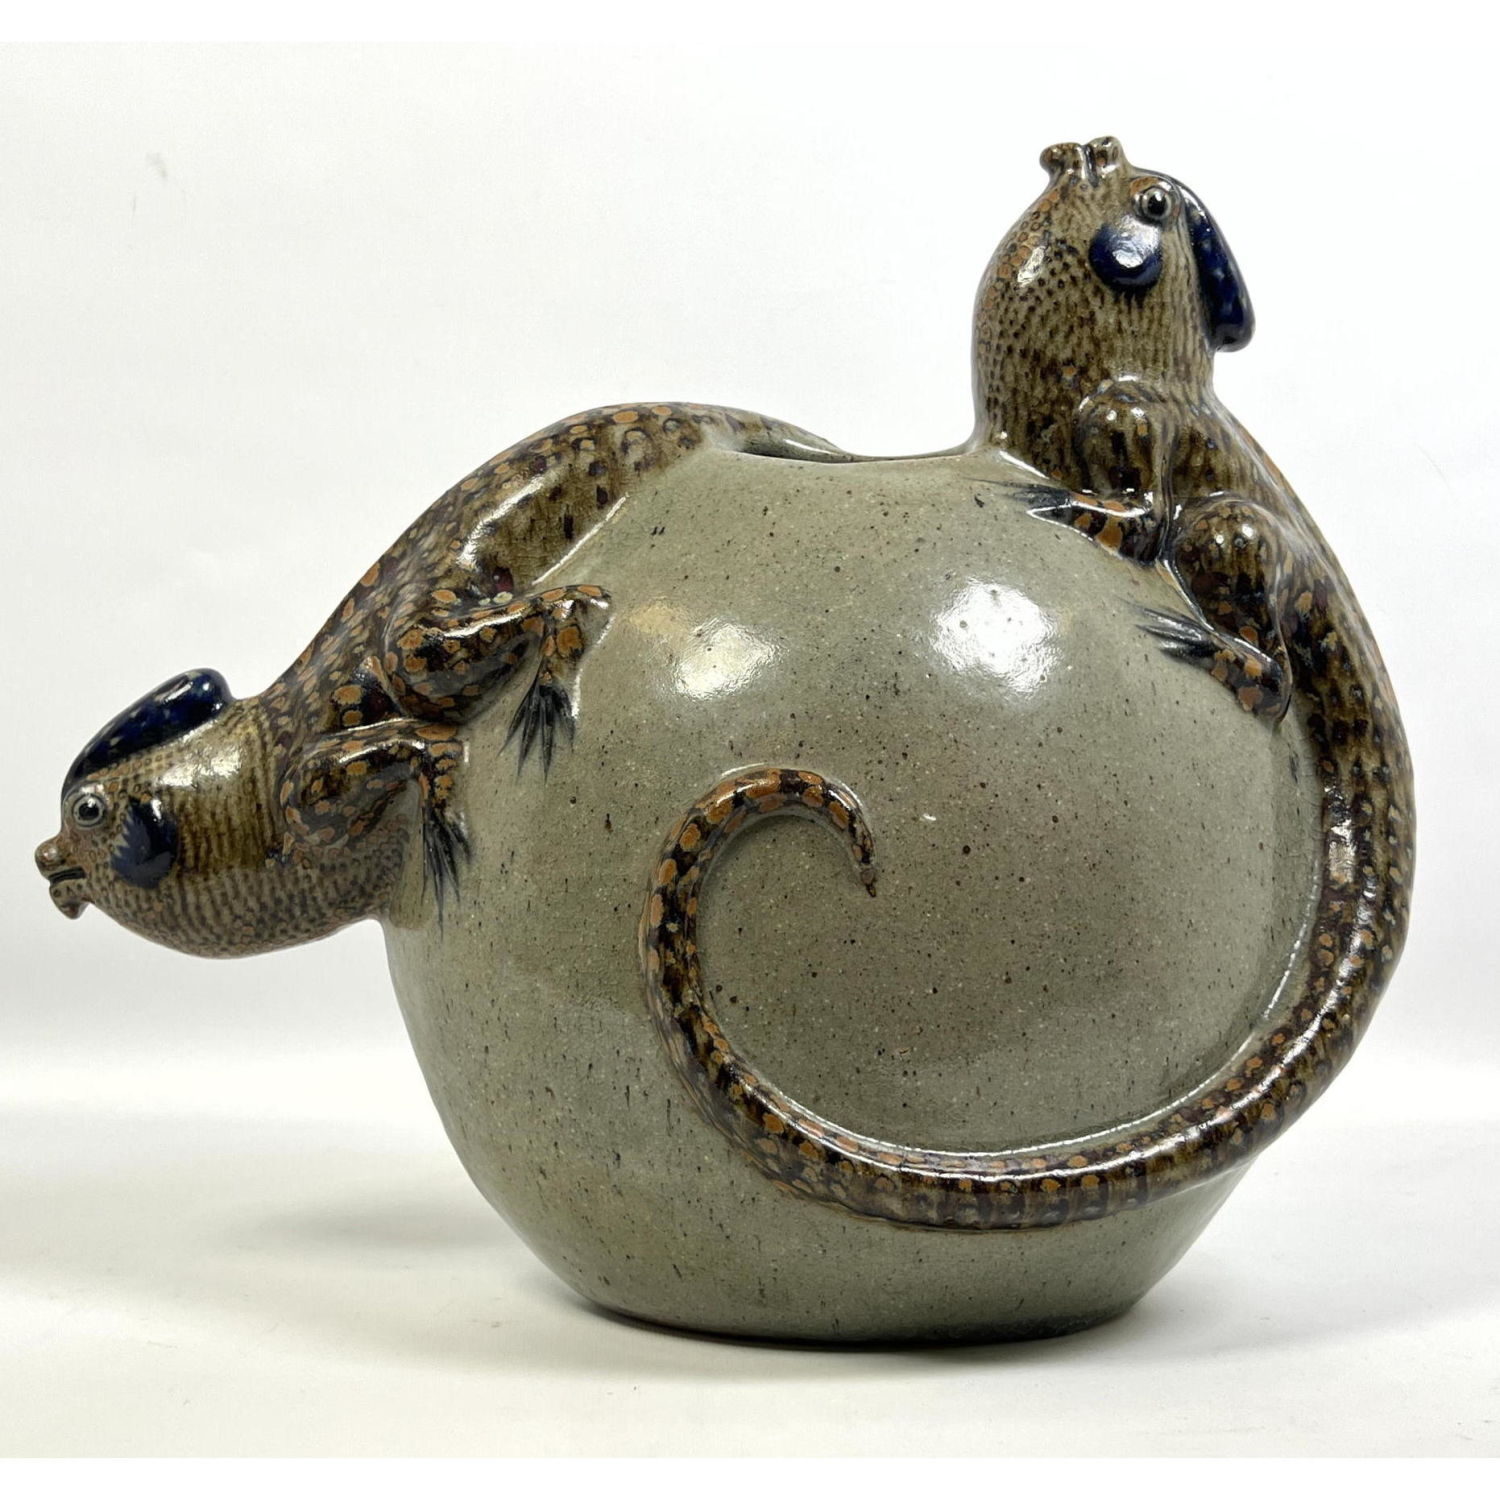 Pottery Vase with iguana decoration